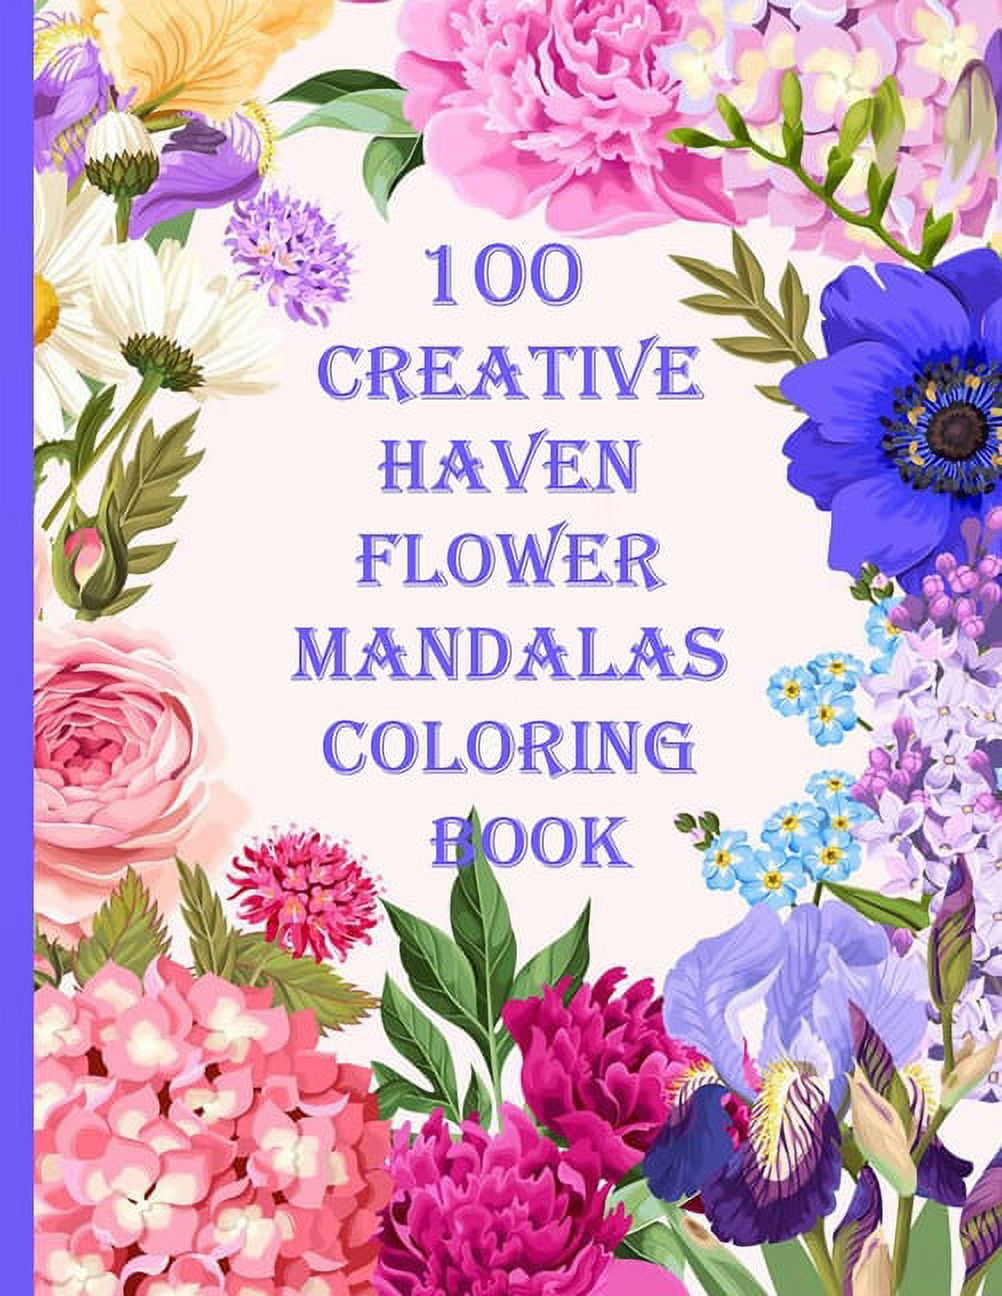 100 Flowers Coloring Book - Creative Mandala - Coloring Books